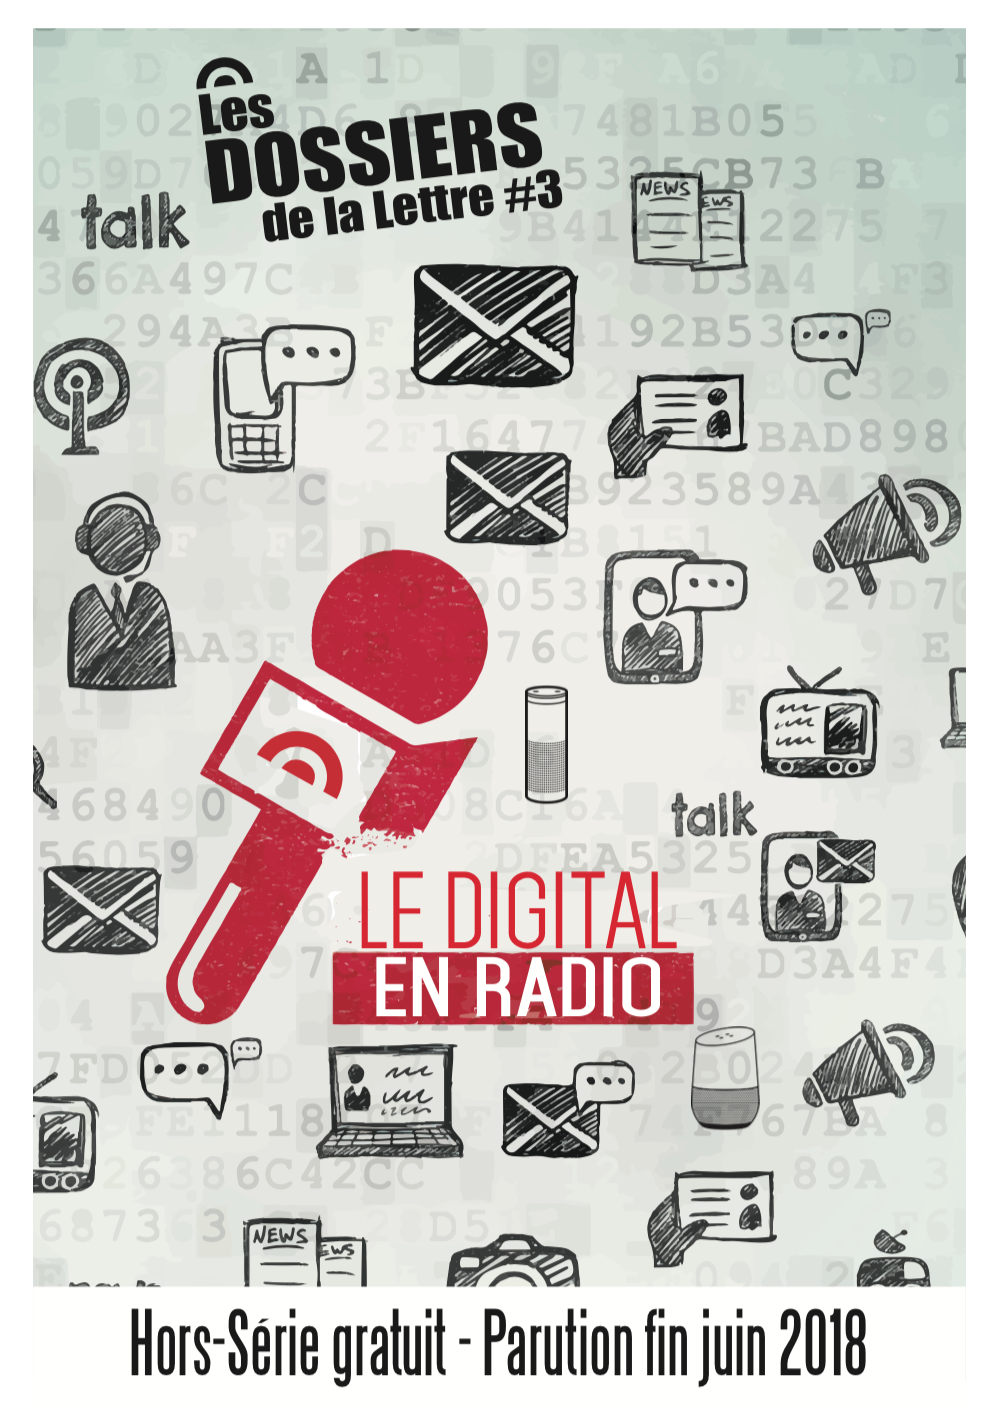 Annoncer et être visible dans le Dossier Hors-série "Le Digital en Radio"